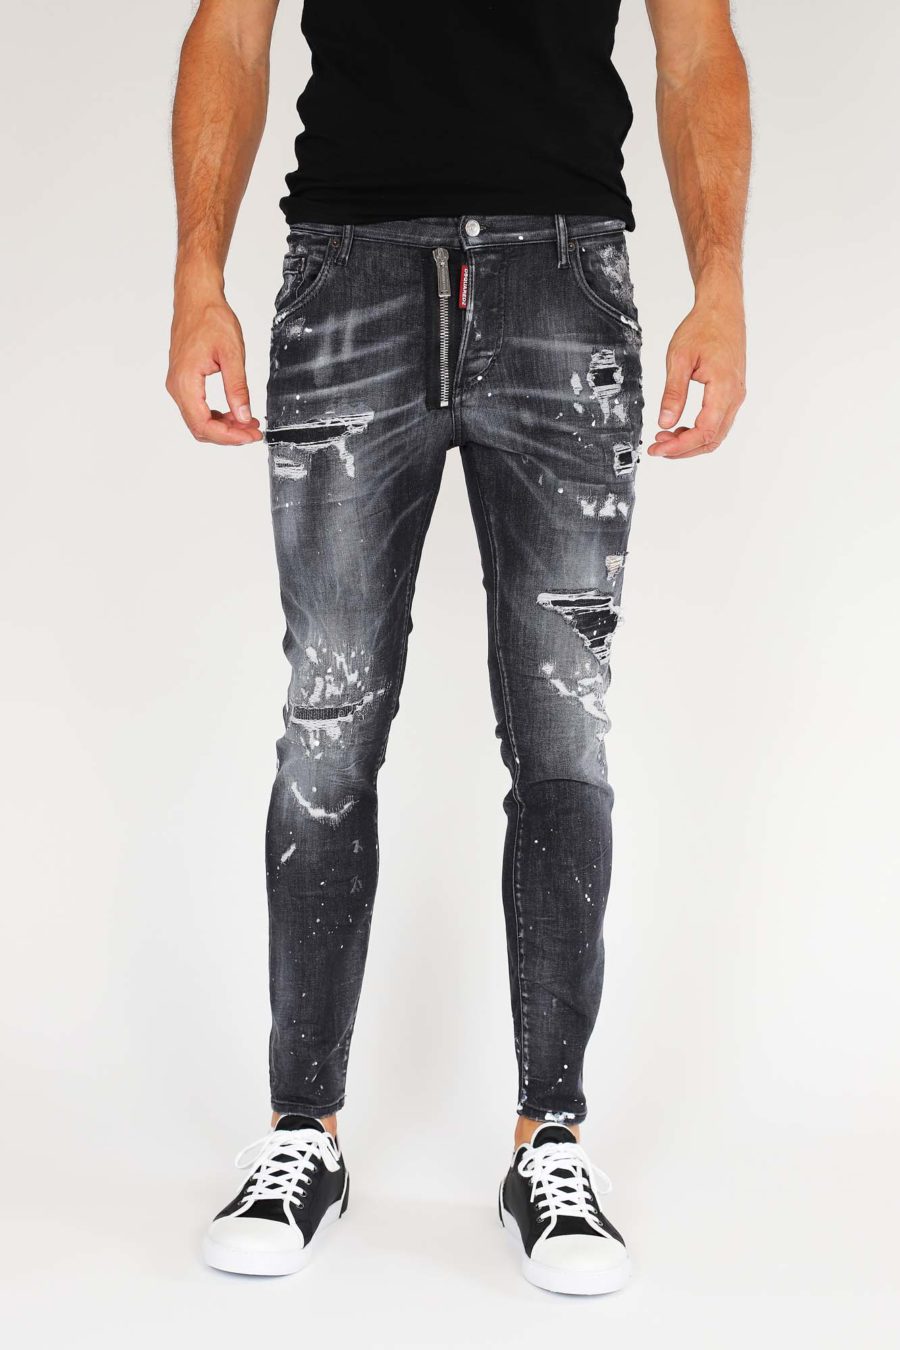 Jeans "Super Twinky Jean" avec fermeture éclair - IMG 9857